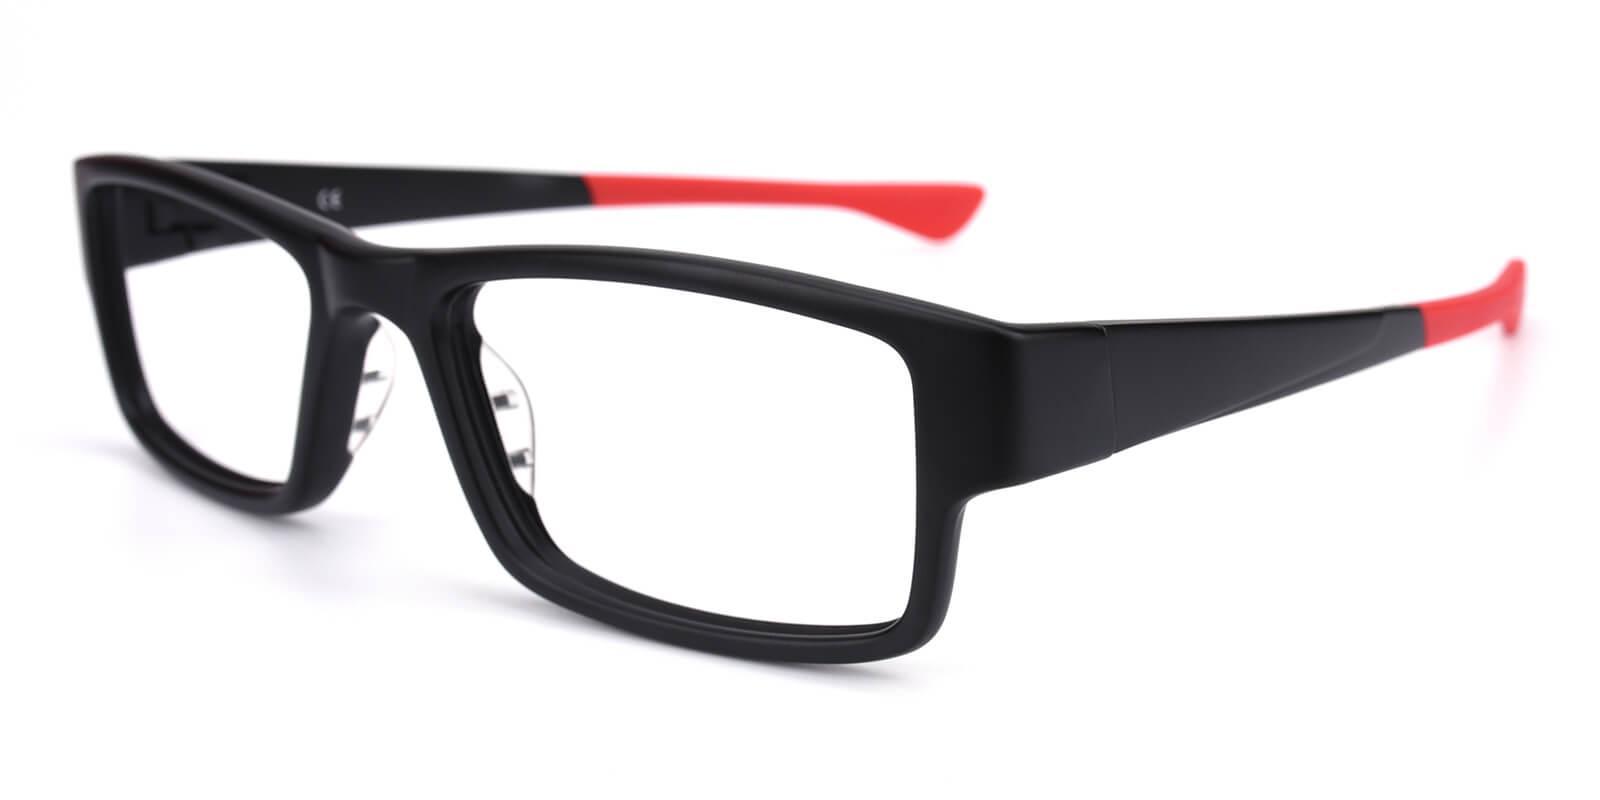 Cassini Red TR SportsGlasses , UniversalBridgeFit Frames from ABBE Glasses